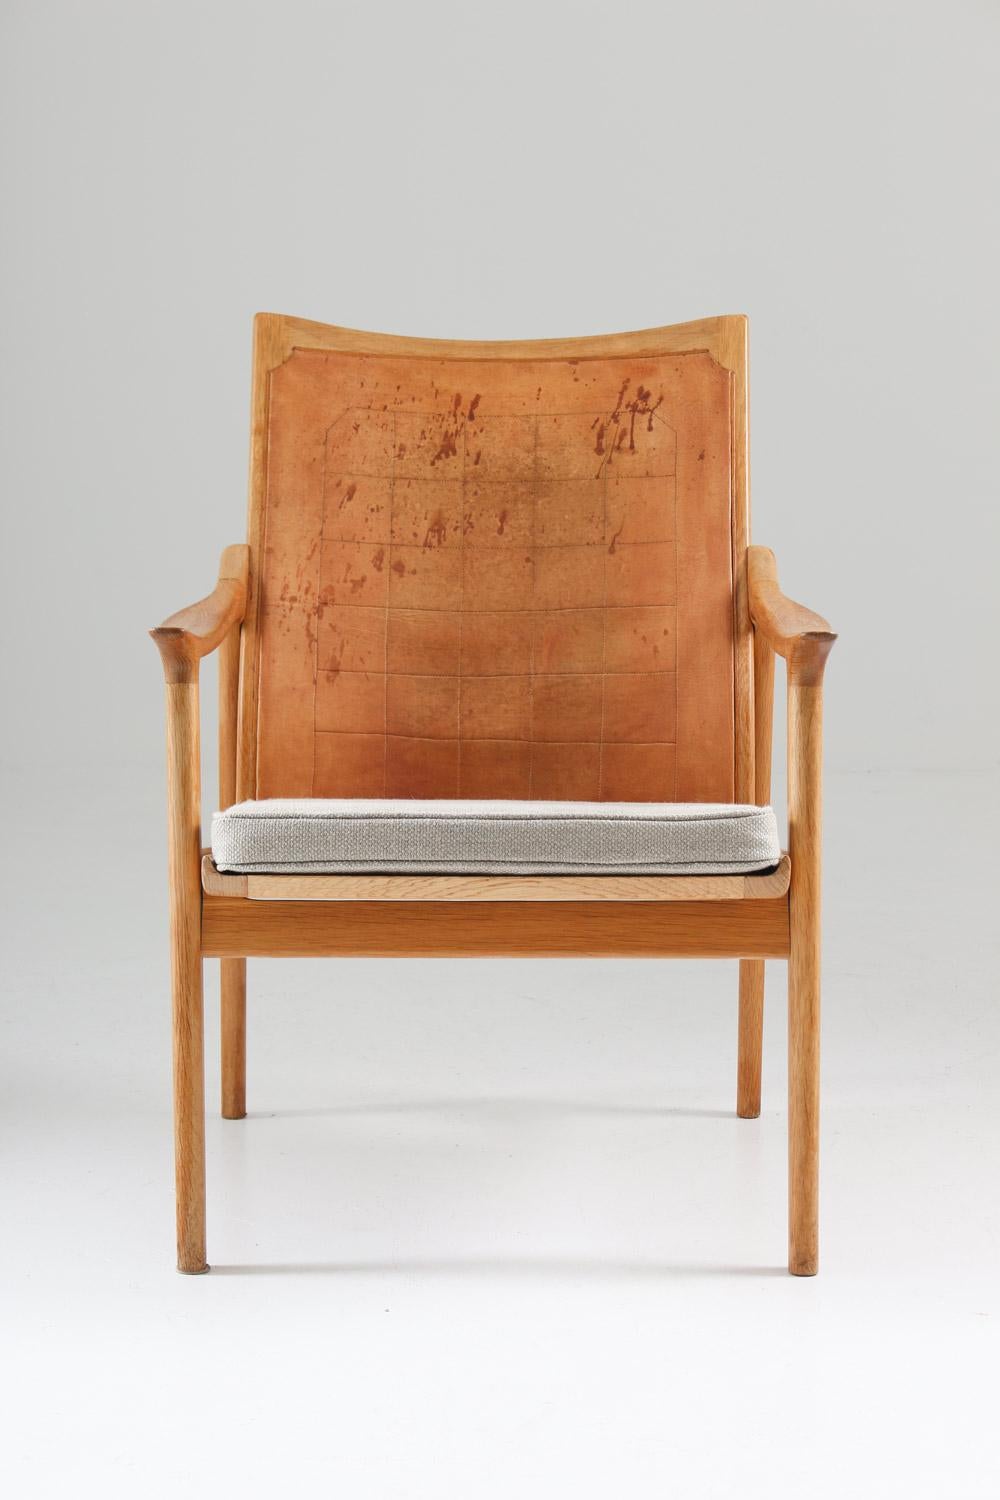 Hans Brattrud, der für seine weltberühmten Hove Møbler Scandia Entwürfe bekannt ist, eine Serie von Beistell- und Loungesesseln aus Sperrholz, entwarf Mitte der 1950er Jahre auch Möbel für Norcraft. Einer dieser Norcraft-Entwürfe, die hier